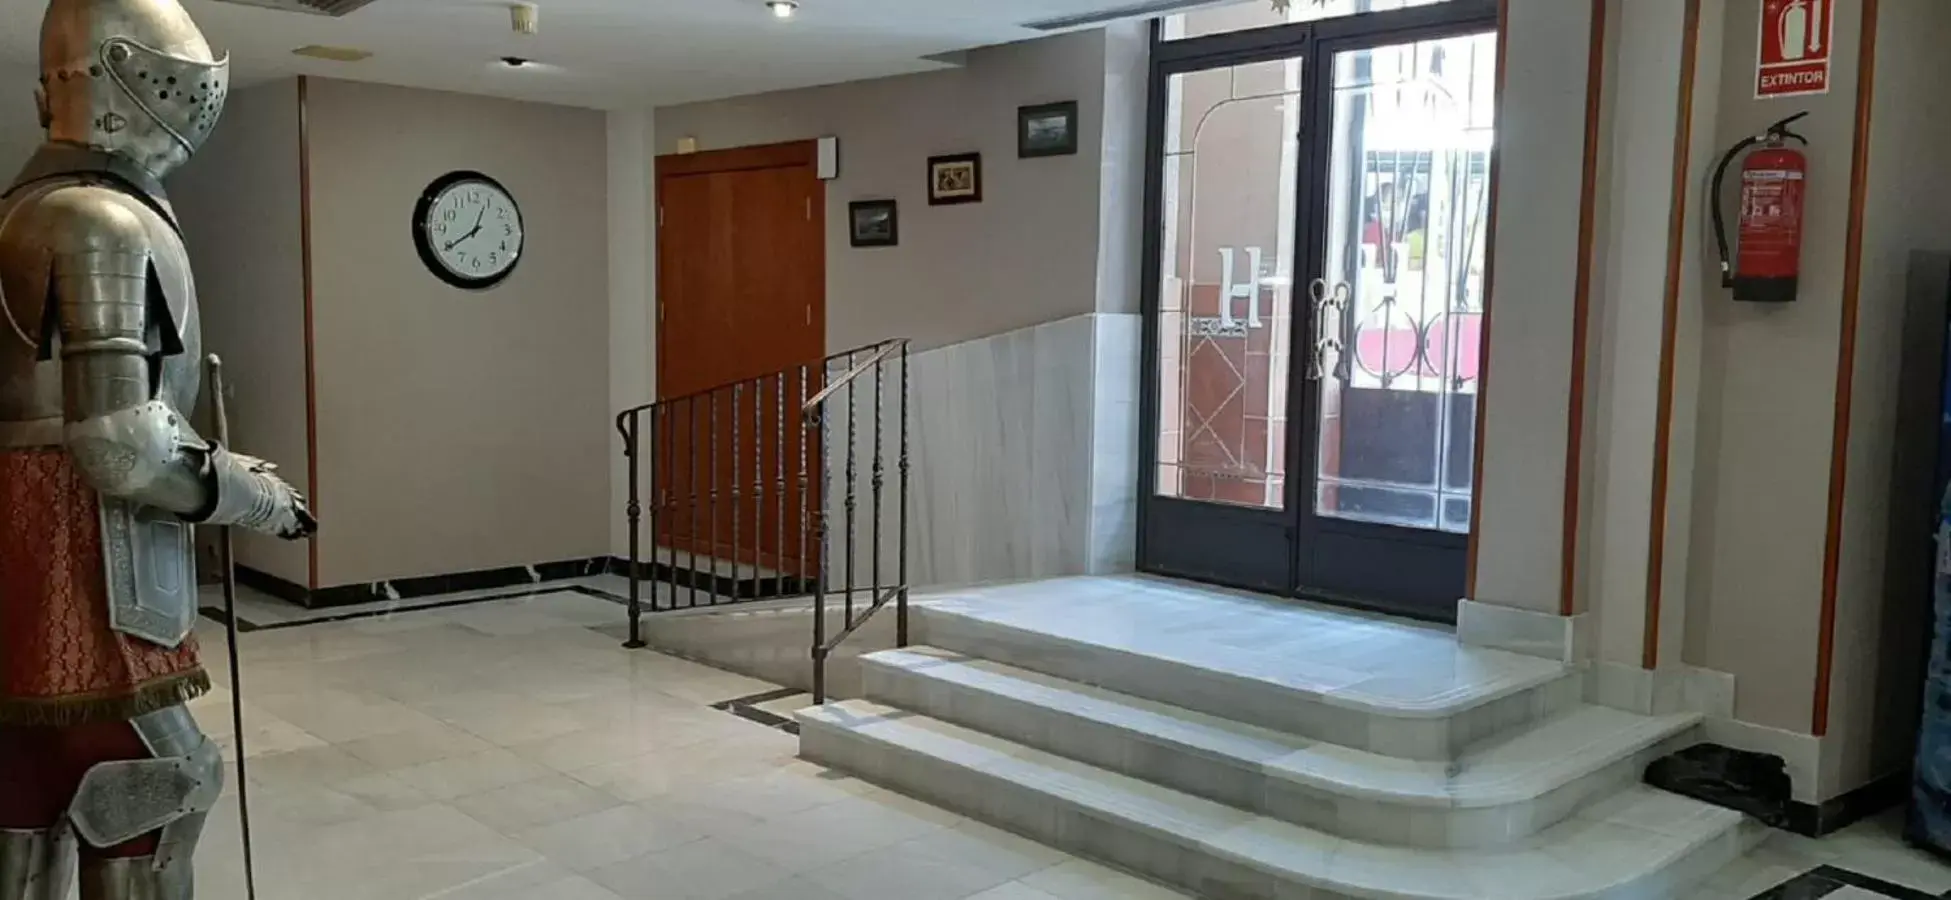 Facade/entrance, Lobby/Reception in Hotel Real De Toledo